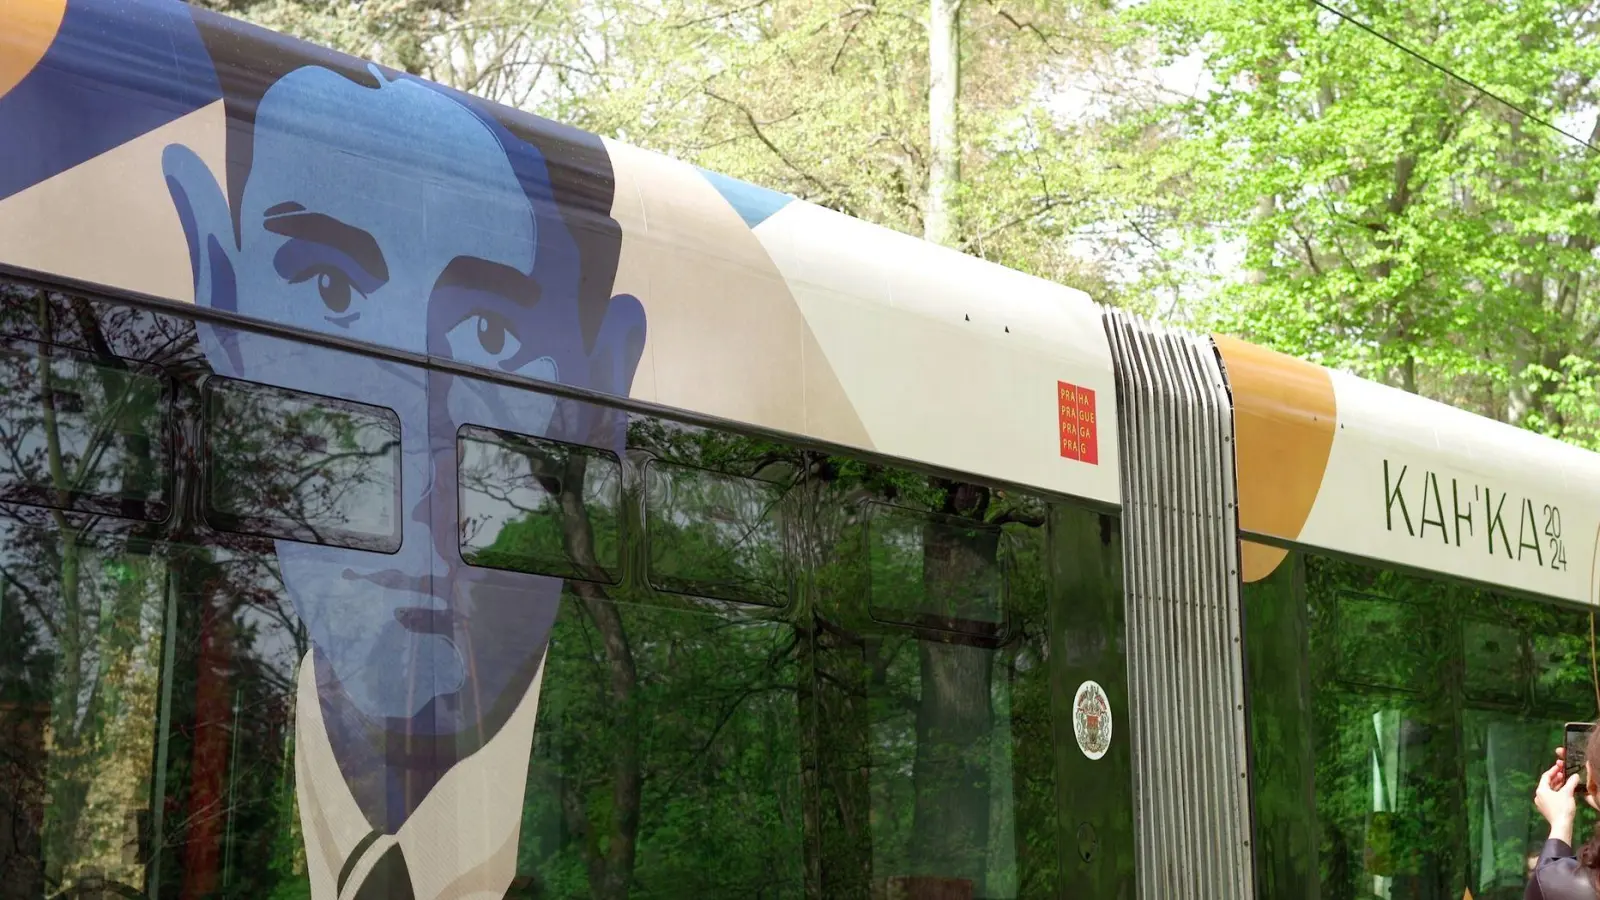 In Prag erinnert diese neugestaltete Straßenbahn an den deutschsprachigen Schriftsteller Franz Kafka. (Foto: Michael Heitmann/dpa)